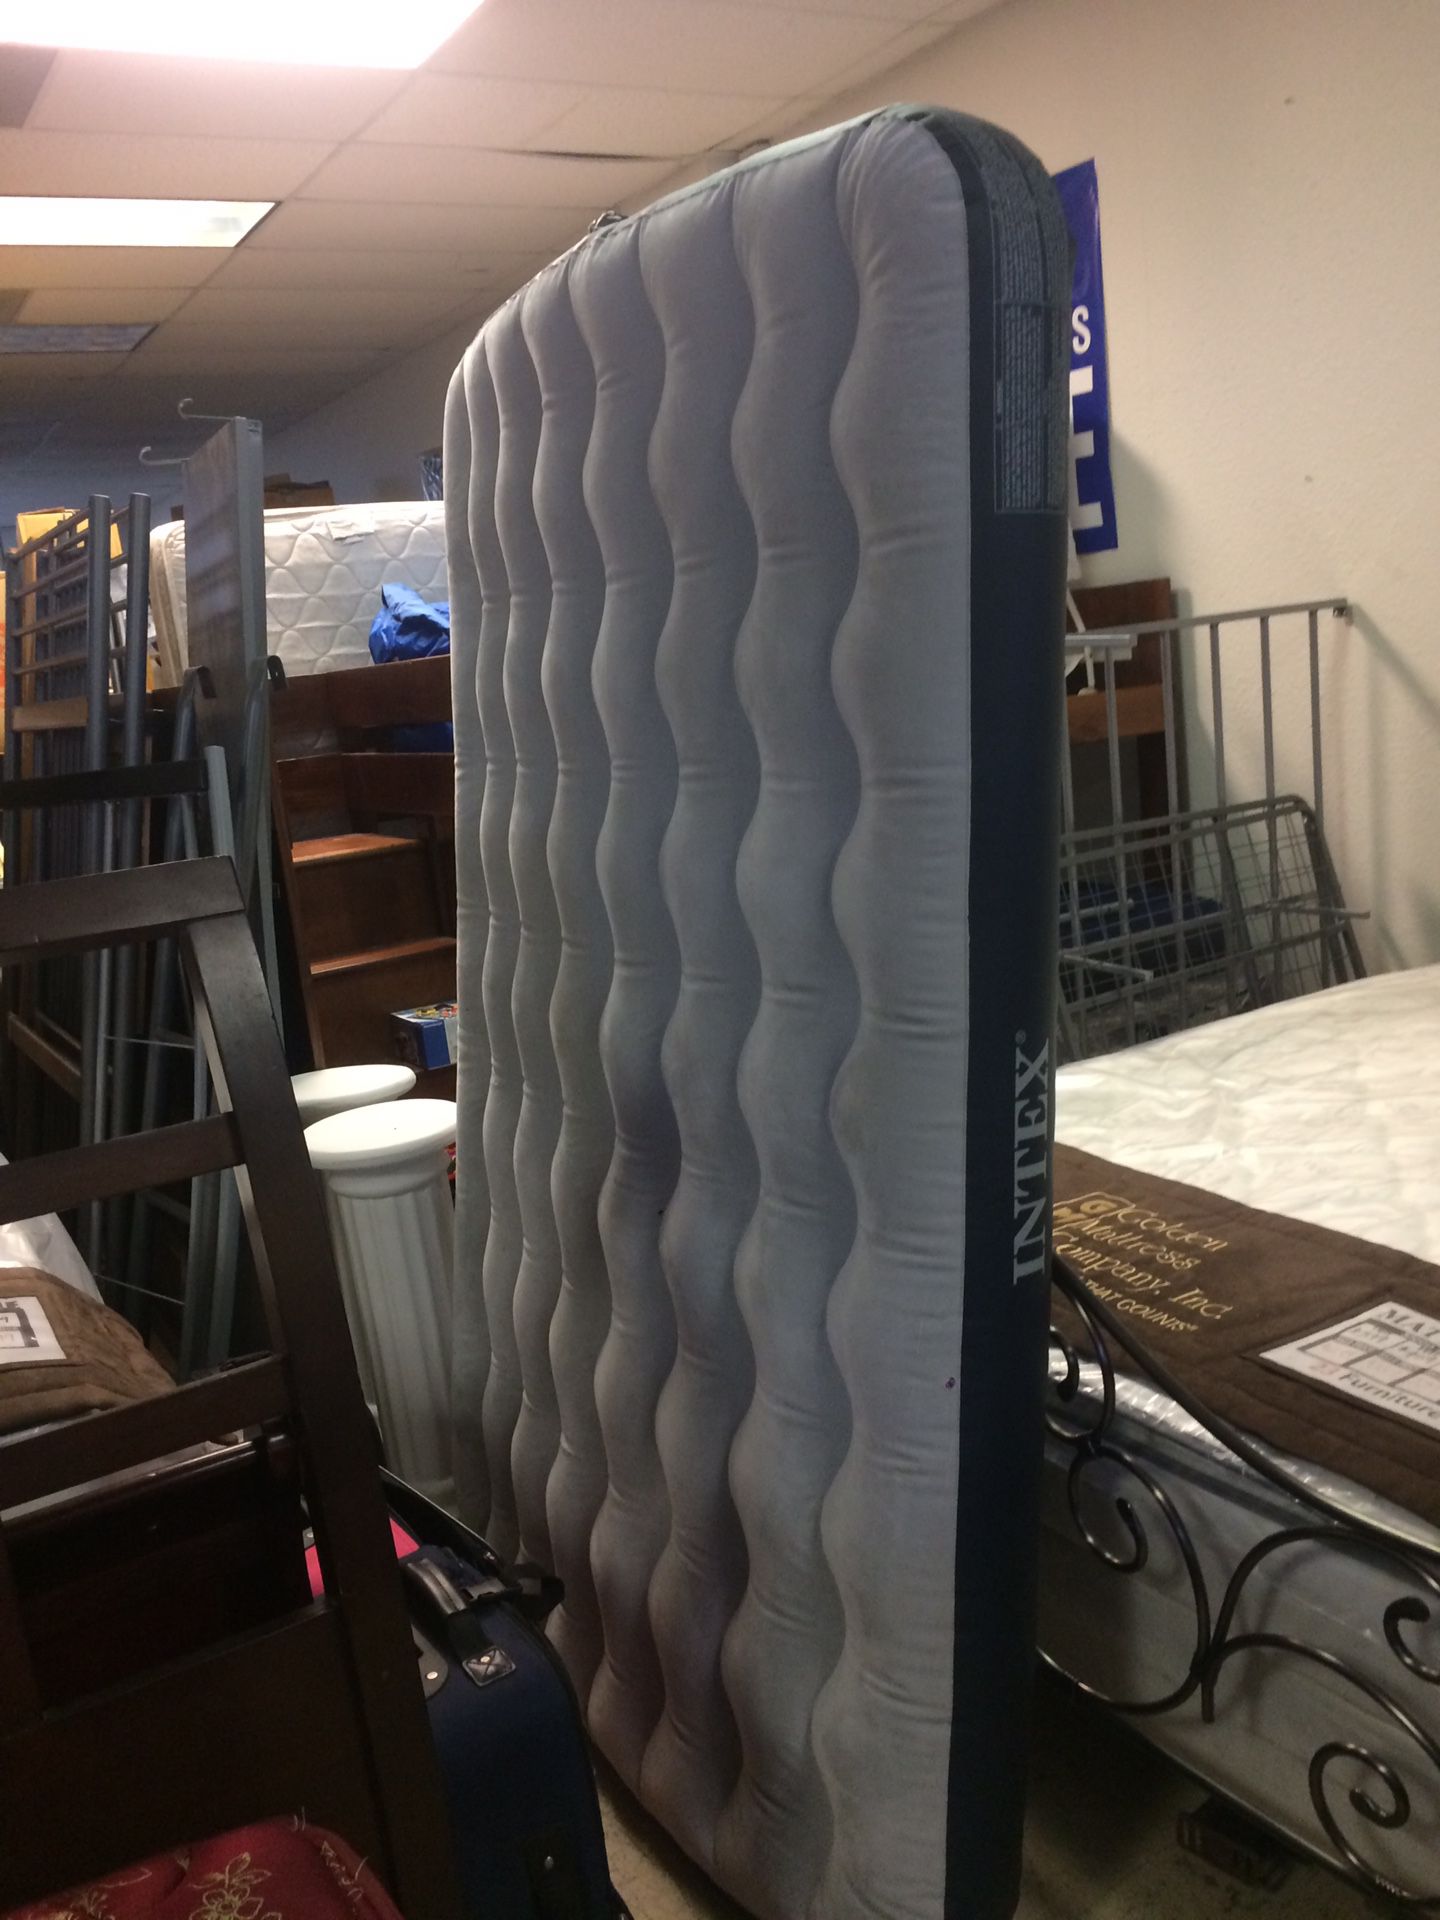 Air mattress